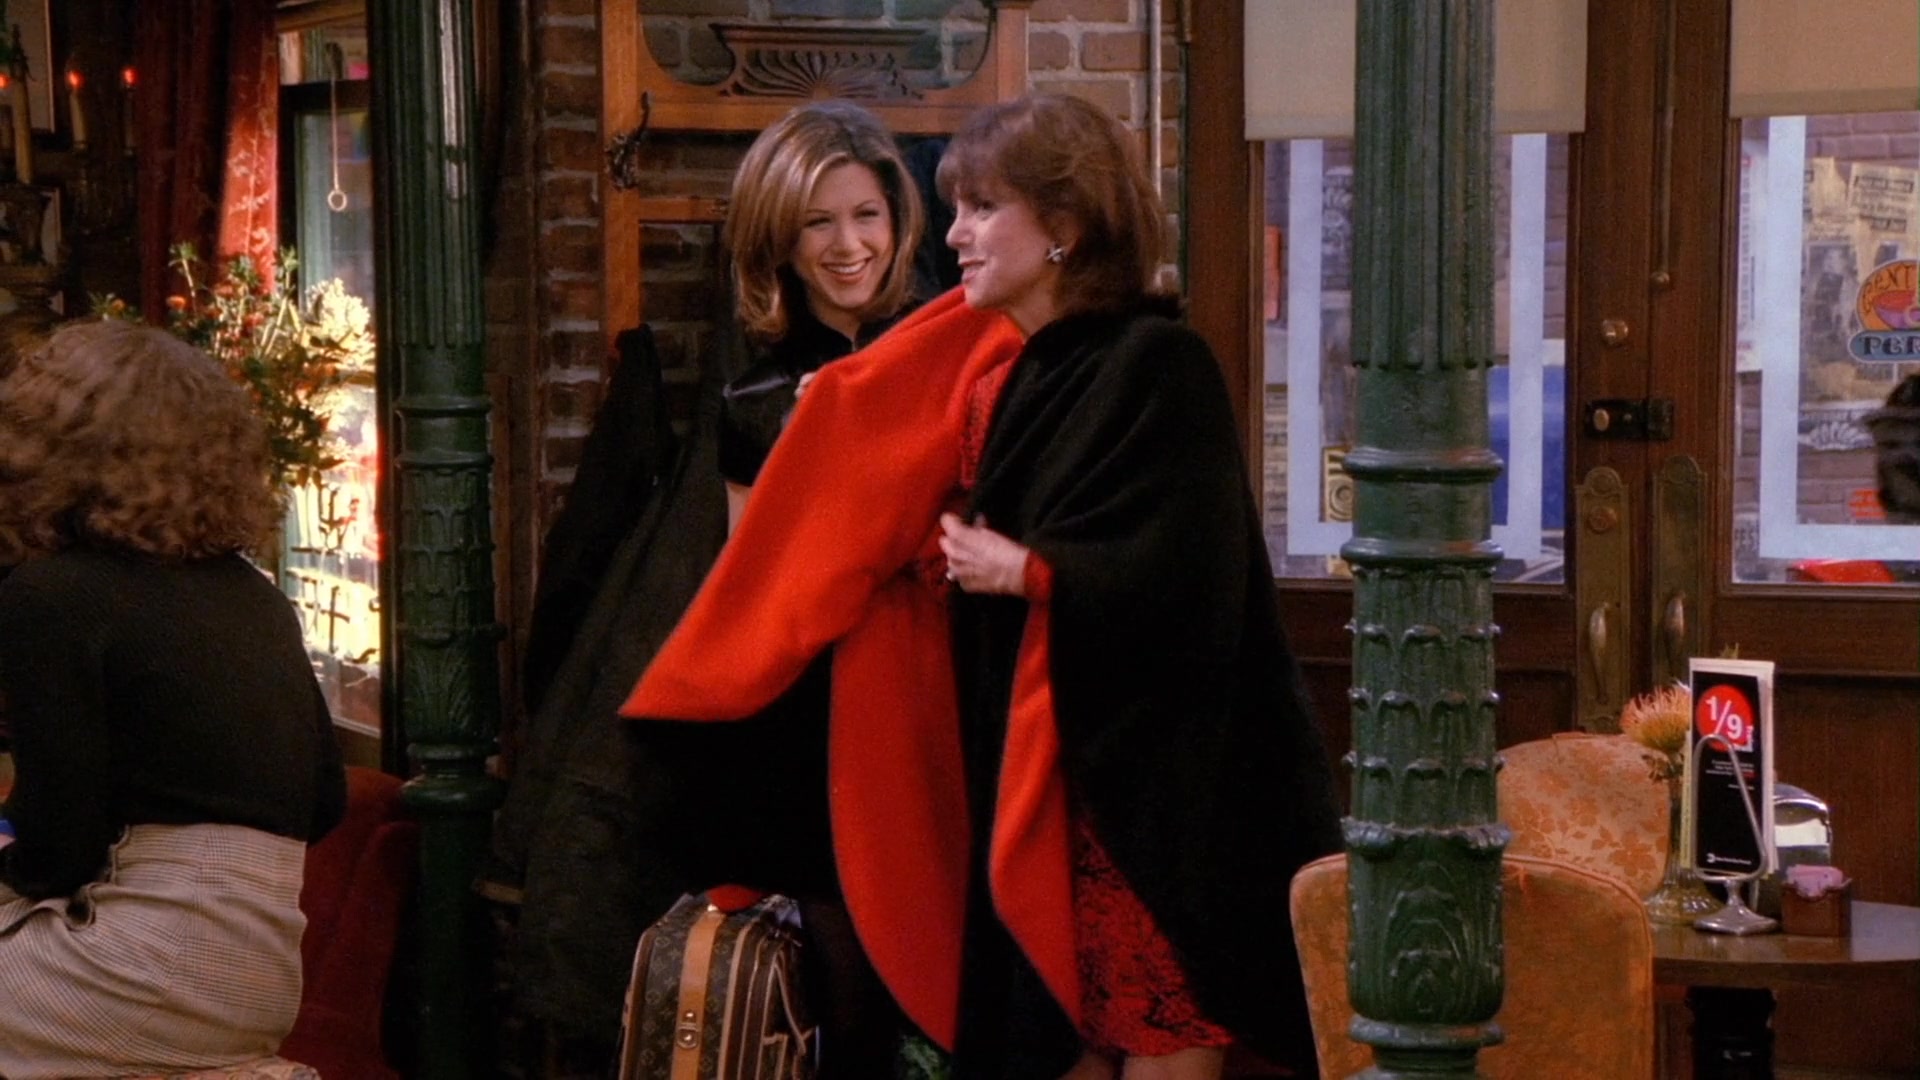 Louis Vuitton Handbag Used By Jennifer Aniston (Rachel Green) In Friends  Season 10 Episode 18 “The Last One Part 2” (2004)